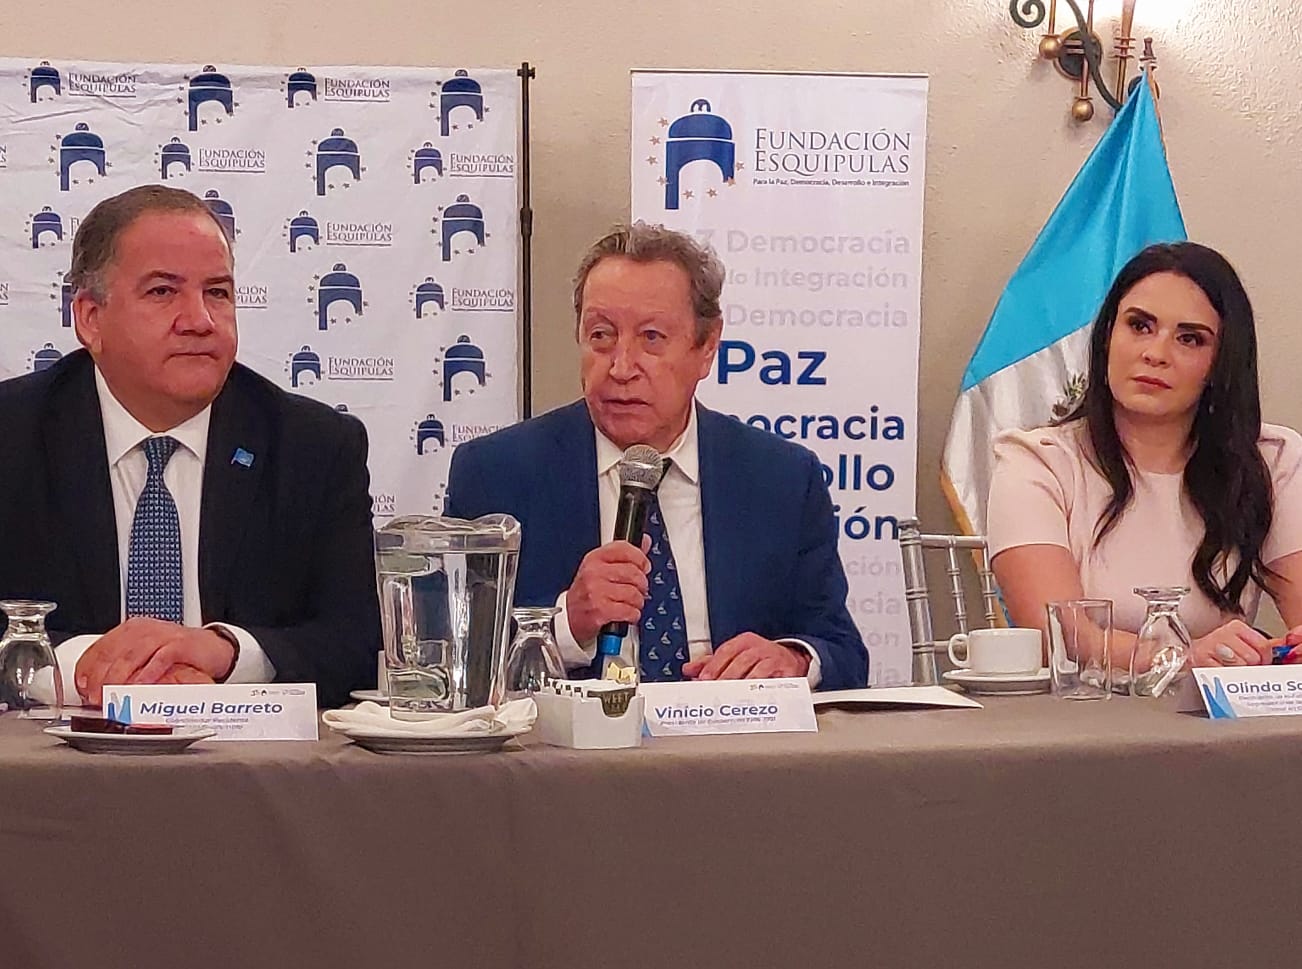 En la foto de izquierda a derecha: Miguel Barreto, Coordinador Residente de ONU Guatemala, Vinicio Cerezo, Expresidente de Guatemala y Olinda Salguero, Presidenta de la Fundación Esquipula